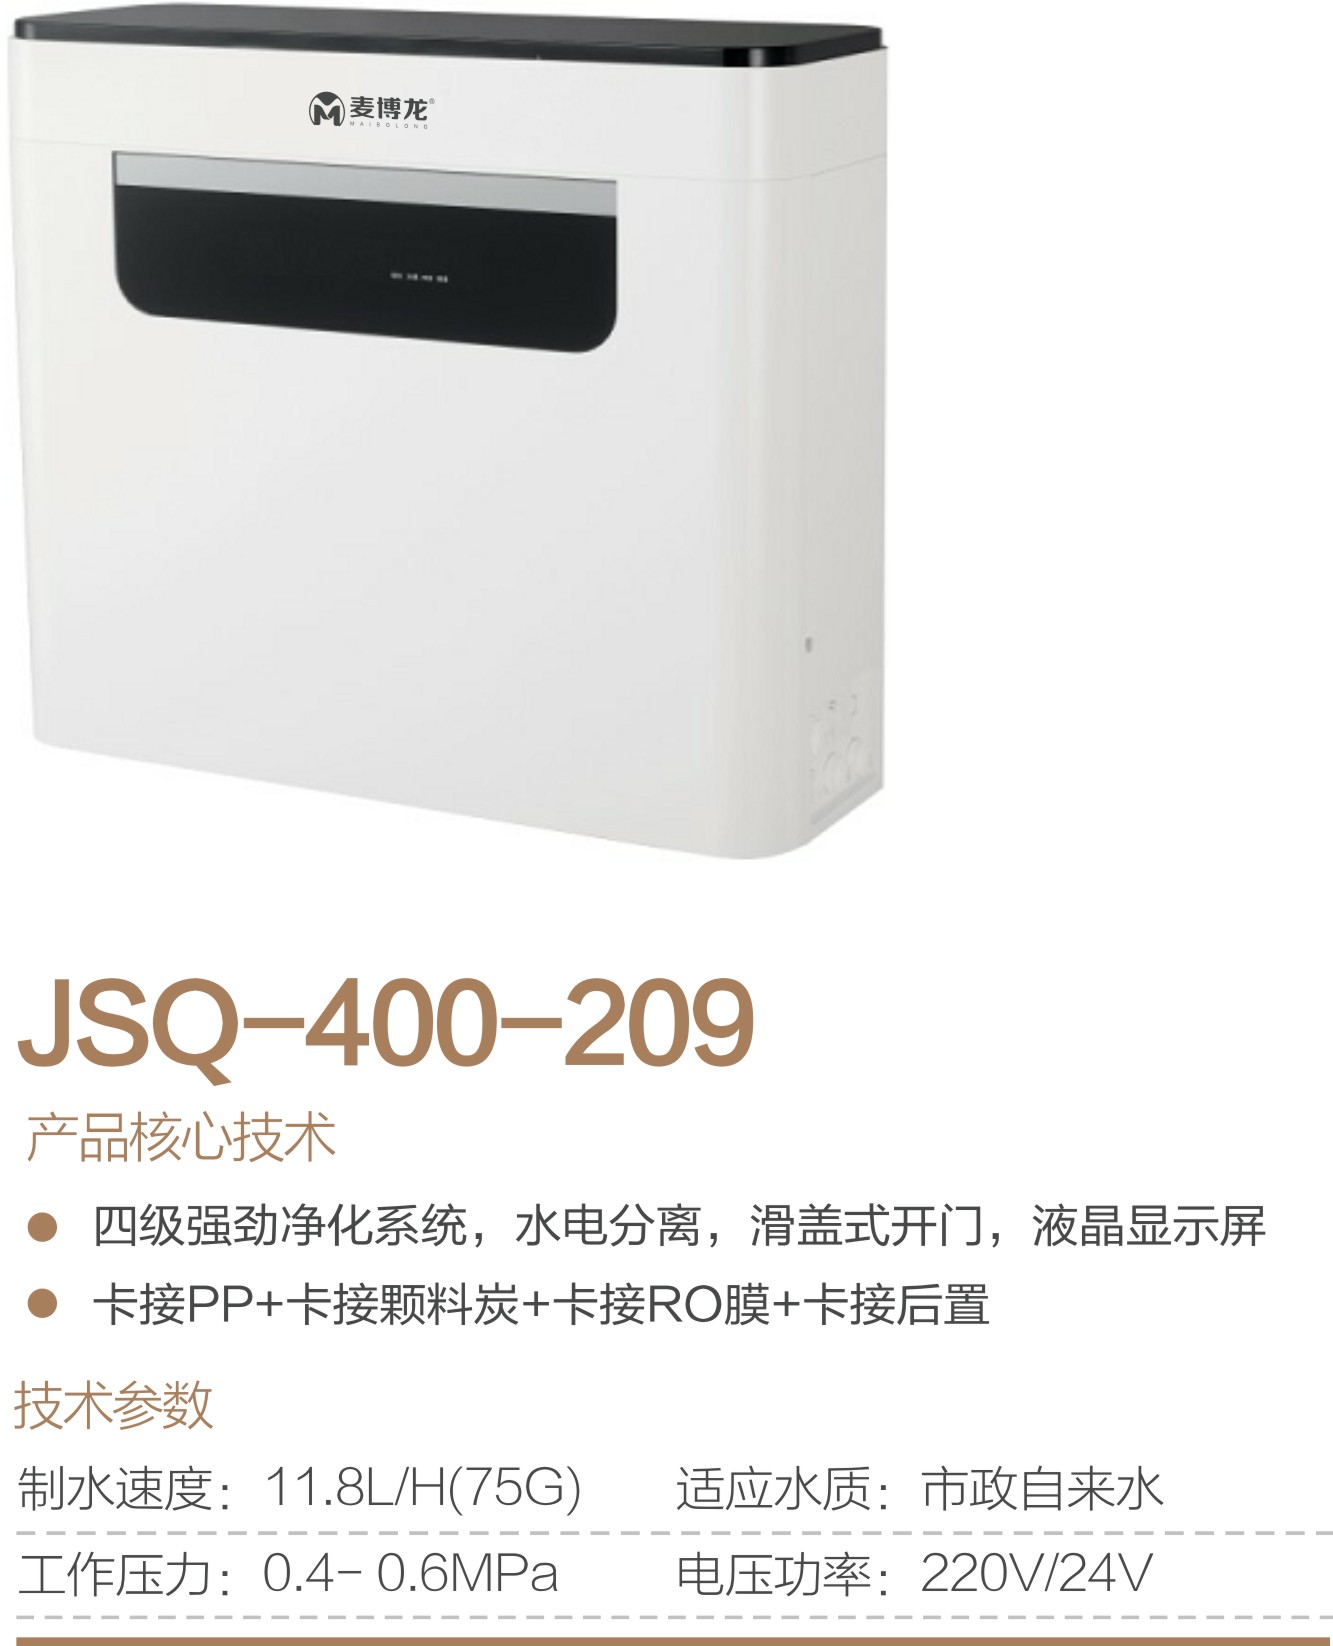 JSQ-400-209